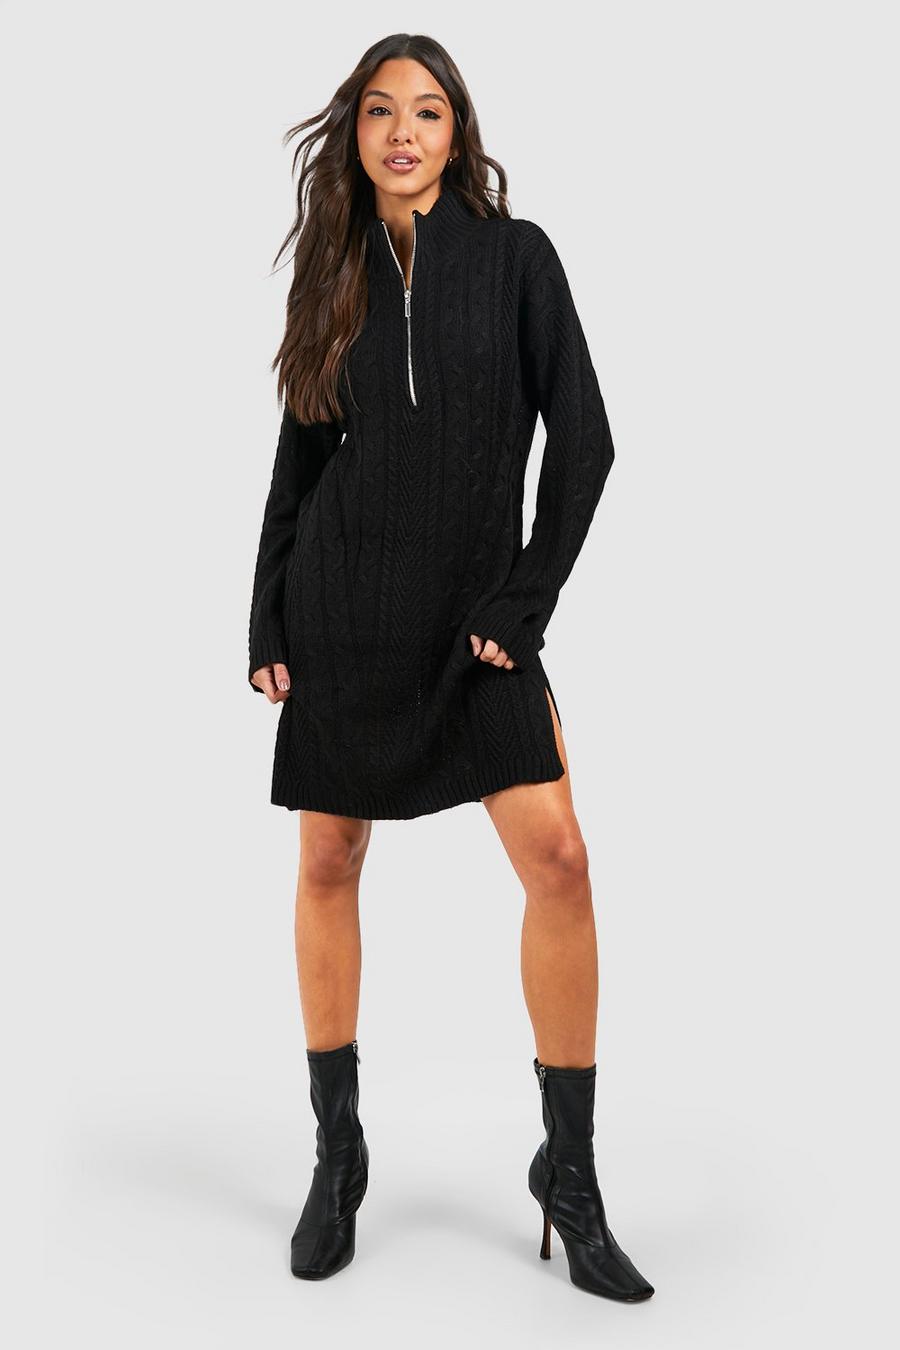 Black Half Zip Cable Knit Jumper Dress